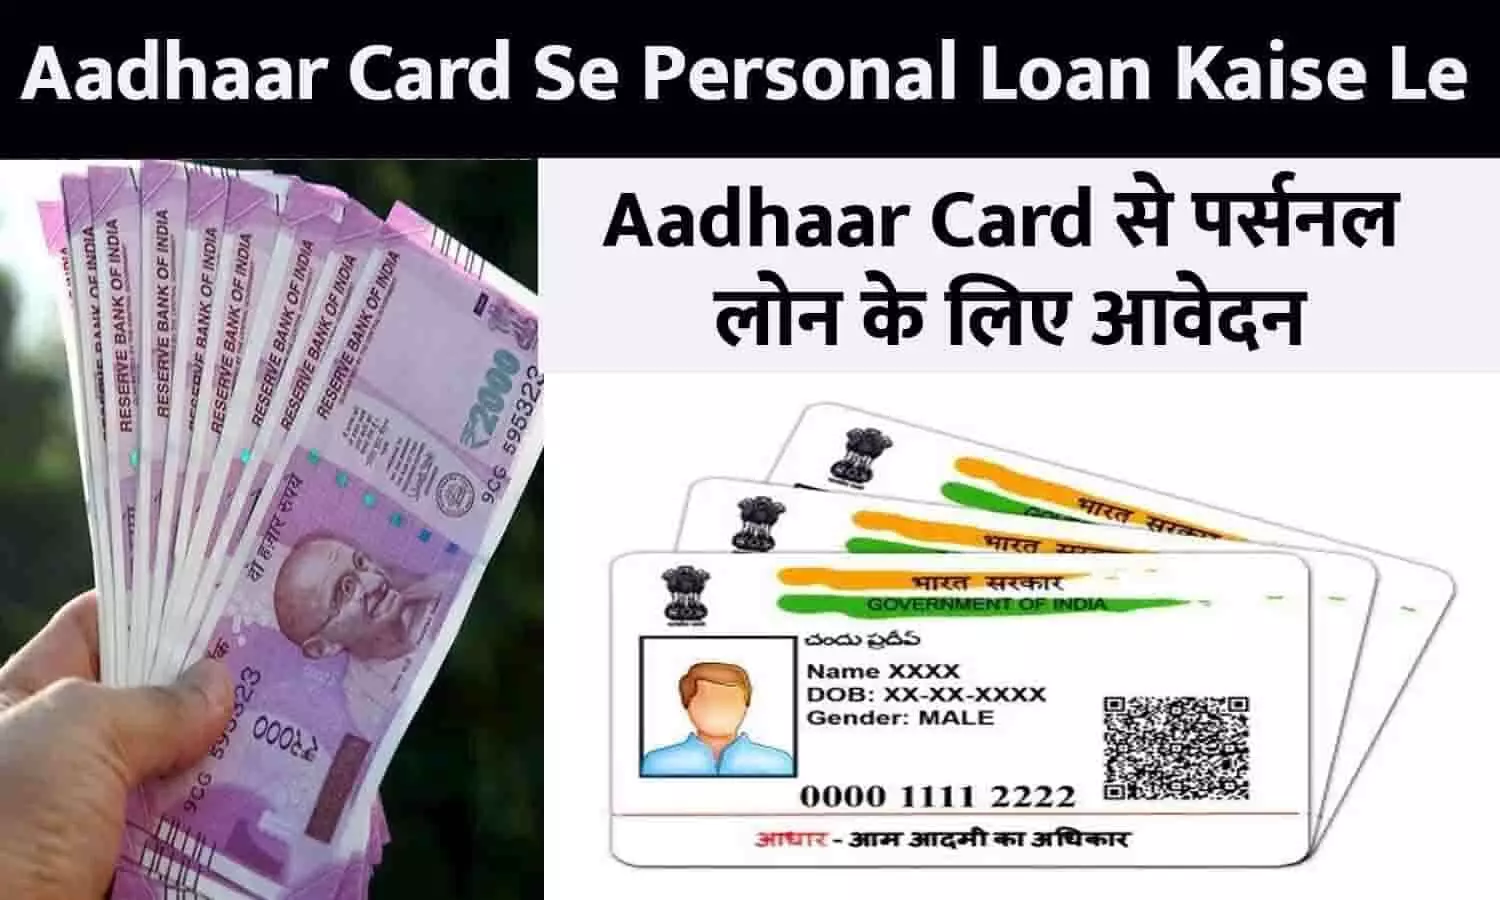 Aadhaar Card Se Personal Loan Kaise Le: मात्र 5 मिनट में मिलेगा Aadhaar Card से पर्सनल लोन! फटाफट जाने Latest Update